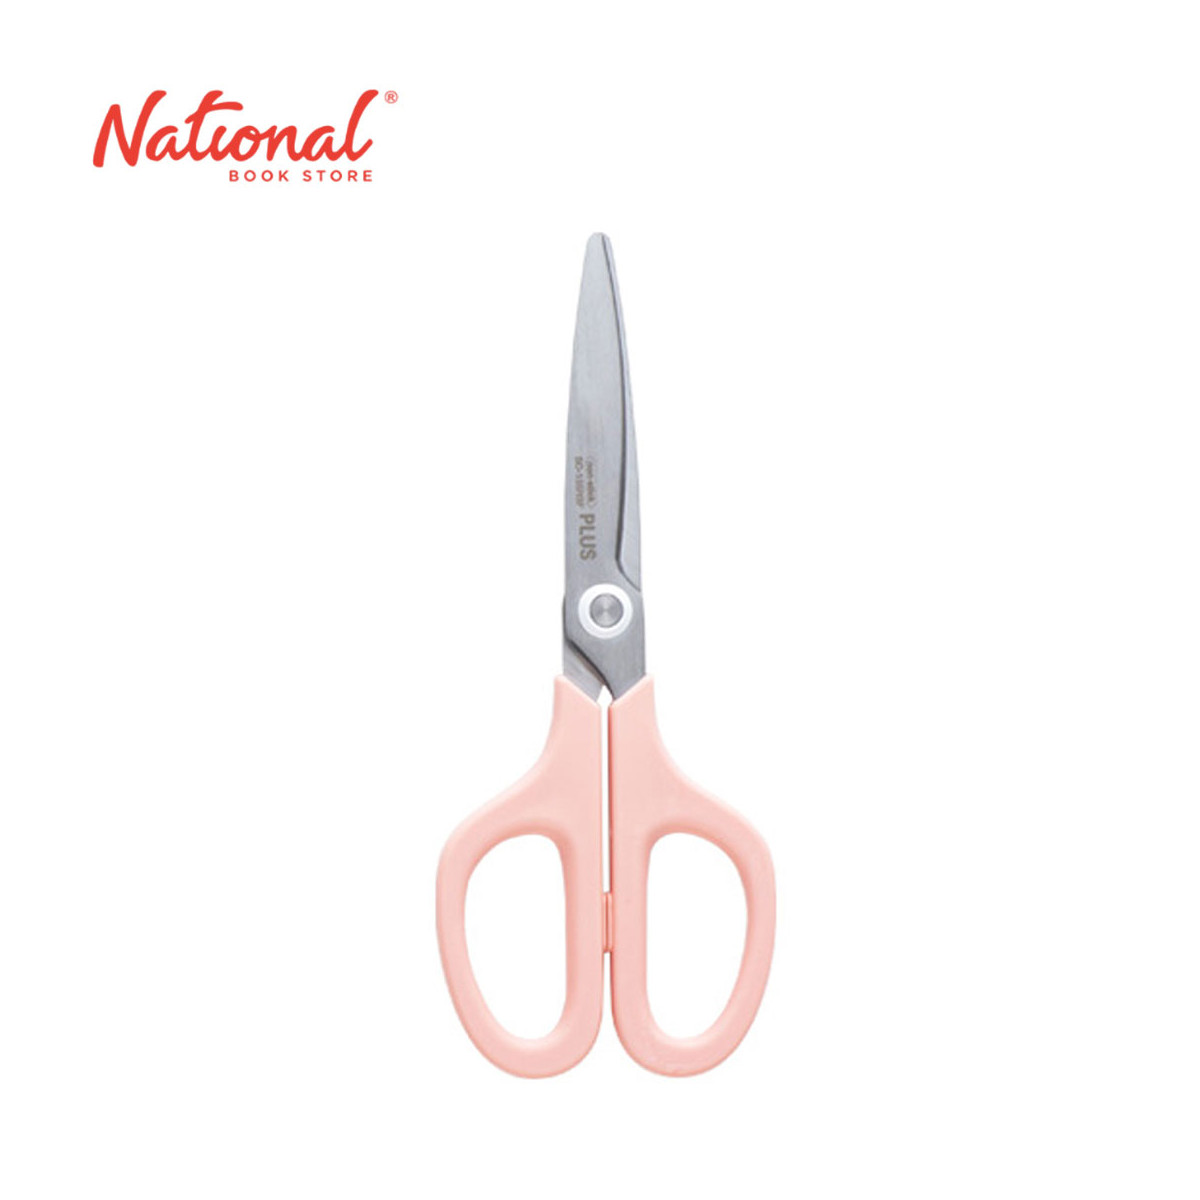 Plus Multi-Purpose Scissors Fit Curve Pastel Pink 6 inches SC 155 - School Supplies